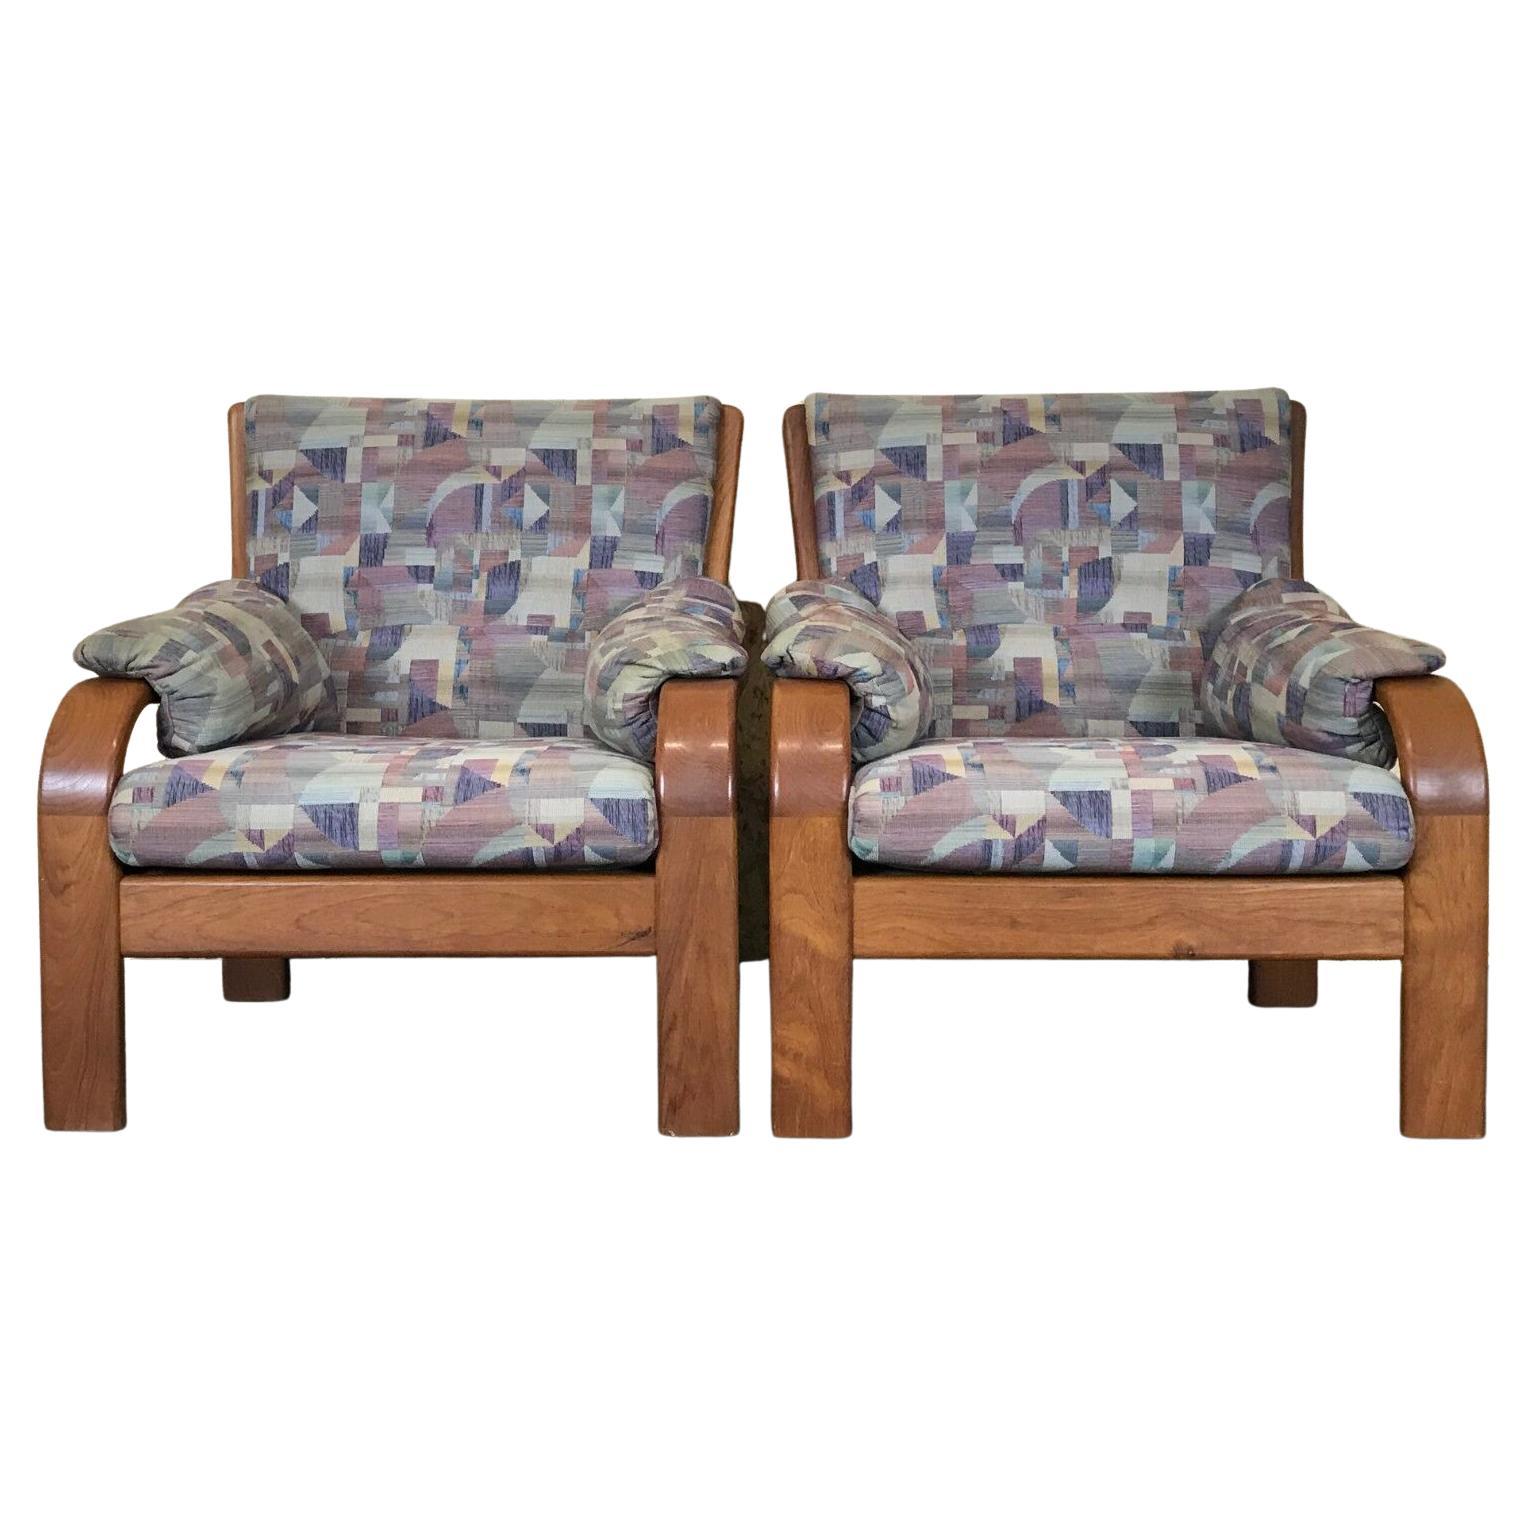 70s Teak Armchair Easy Chair Olsen & Laursen Danish Design Made in Denmark For Sale